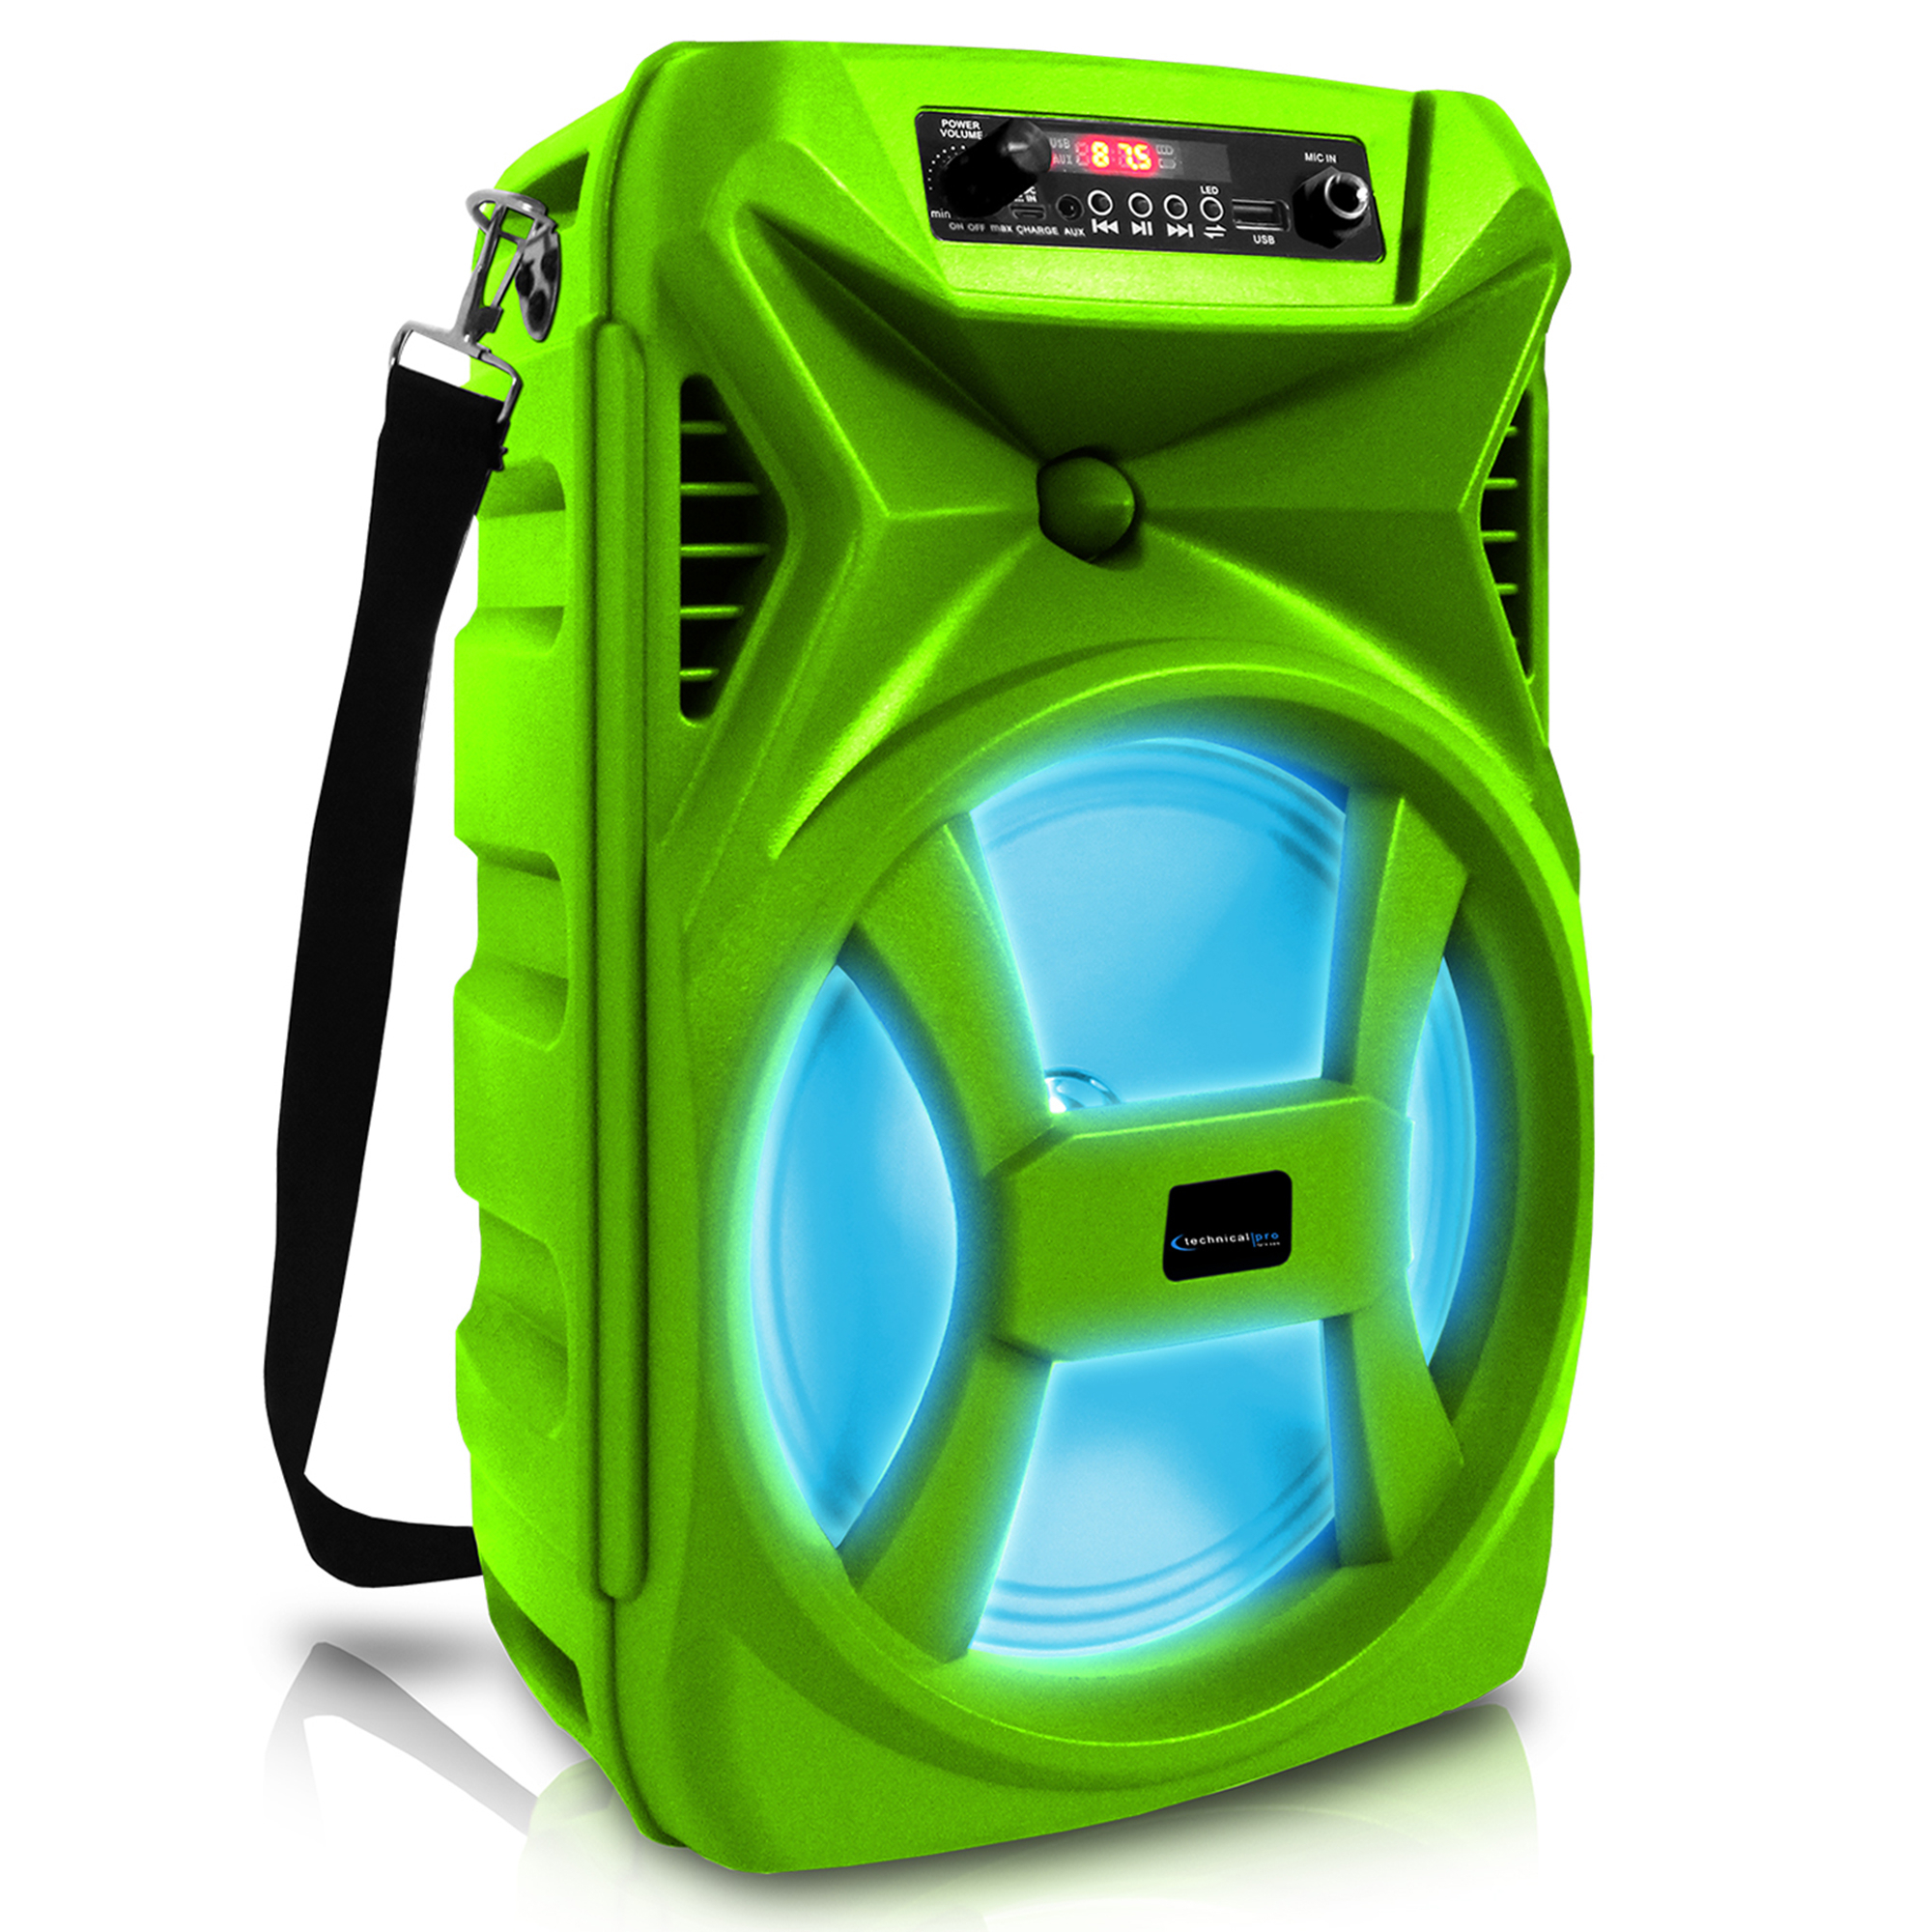 Technical Pro 8 Portable 500 Watts Bluetooth Speaker W/ Woofer & Tweeter, Festival PA LED Speaker, USB Card Input, Wireless Stereo (Green)